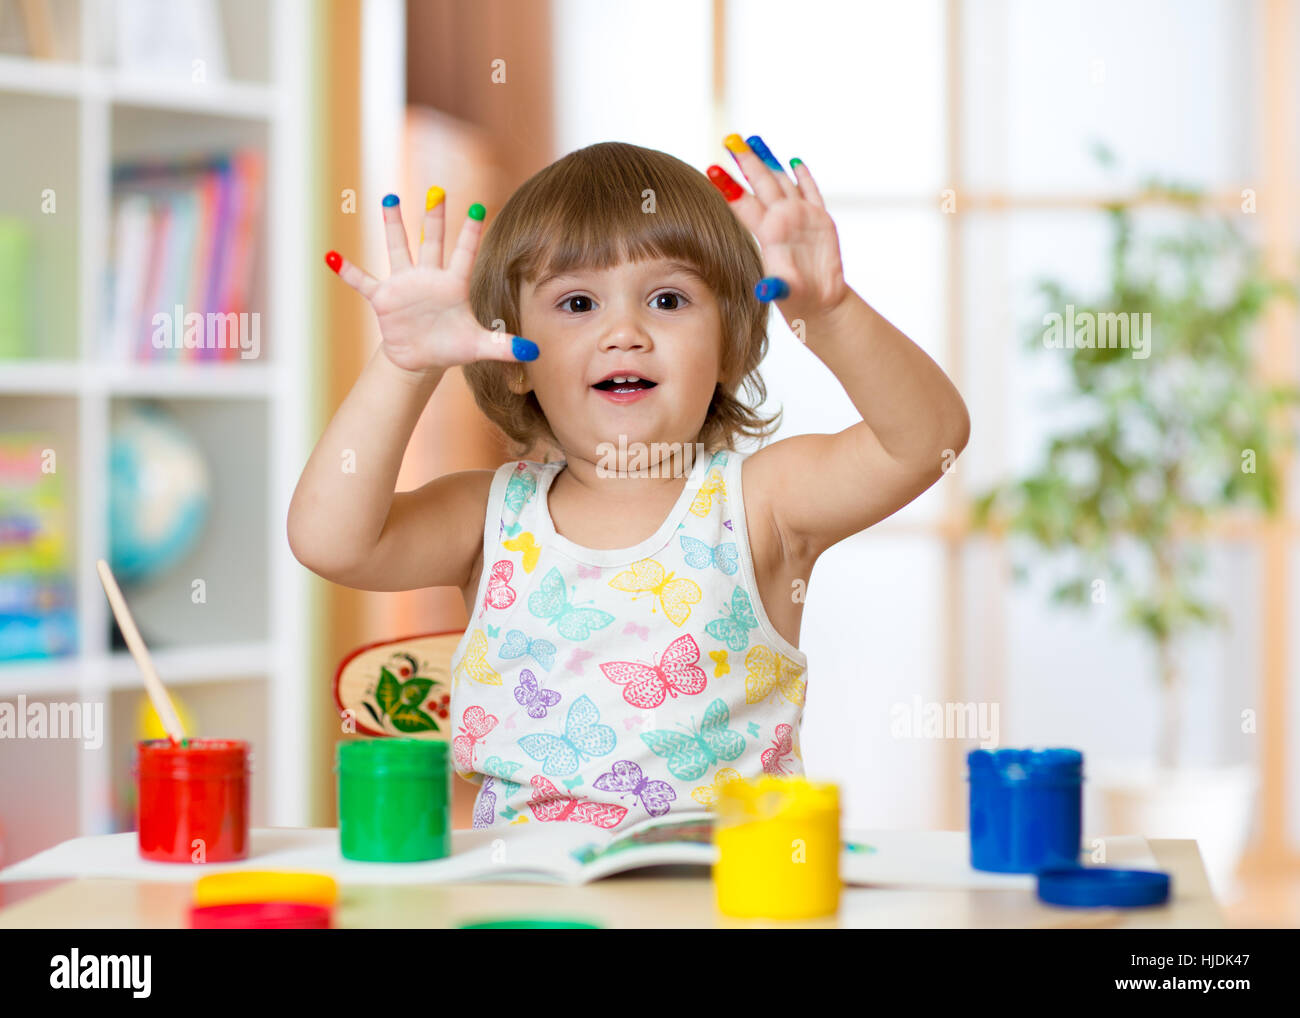 Cute cheerful kid girl montrant ses doigts peints dans des couleurs vives Banque D'Images